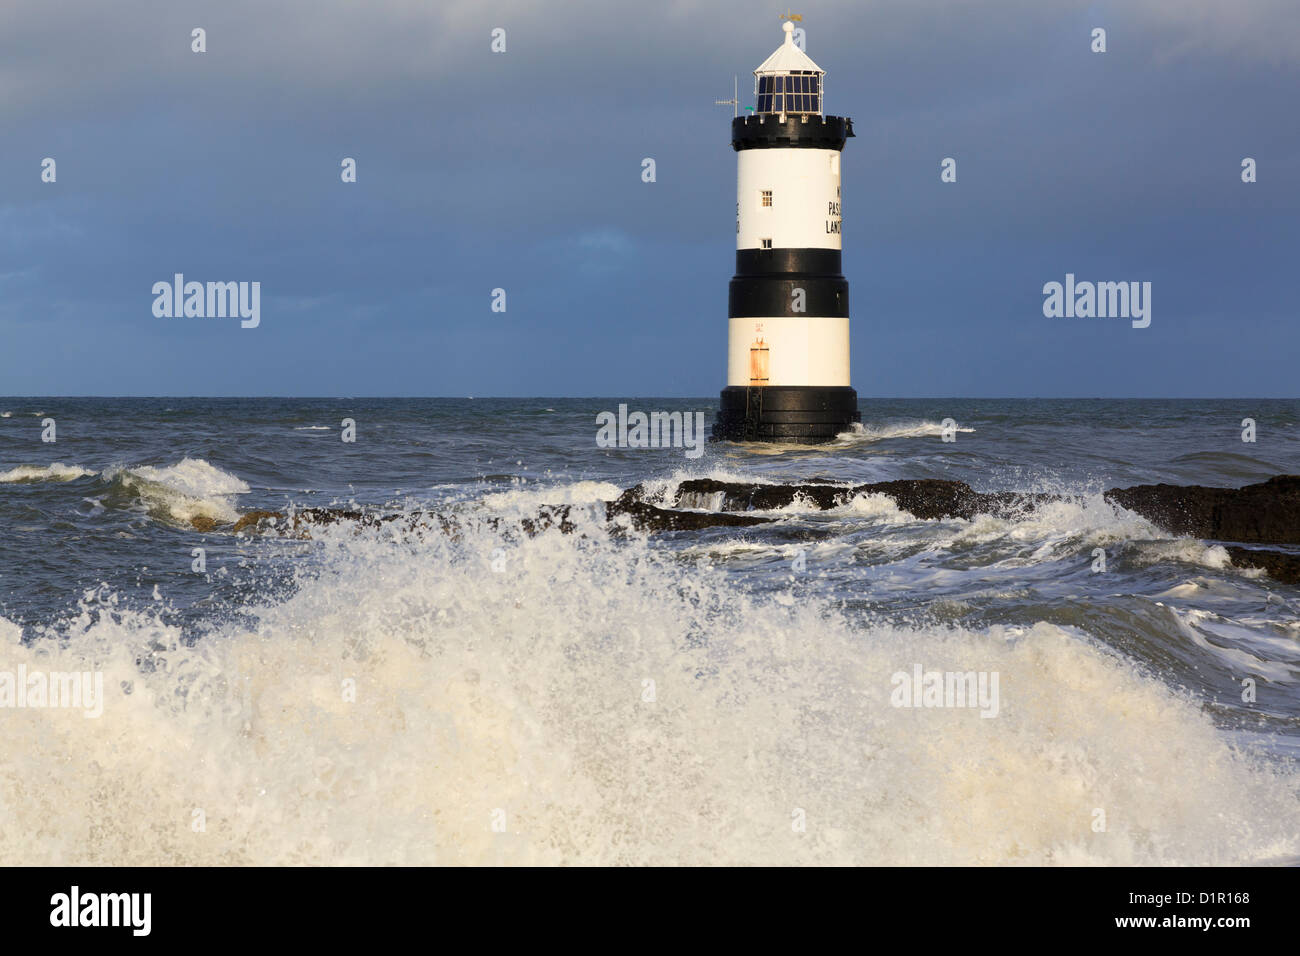 De grandes vagues s'écrasant sur la rive avec le phare de Penmon noir et blanc (Trwyn du) au large de la côte sauvage à Penmon point Isle of Anglesey North Wales UK Banque D'Images